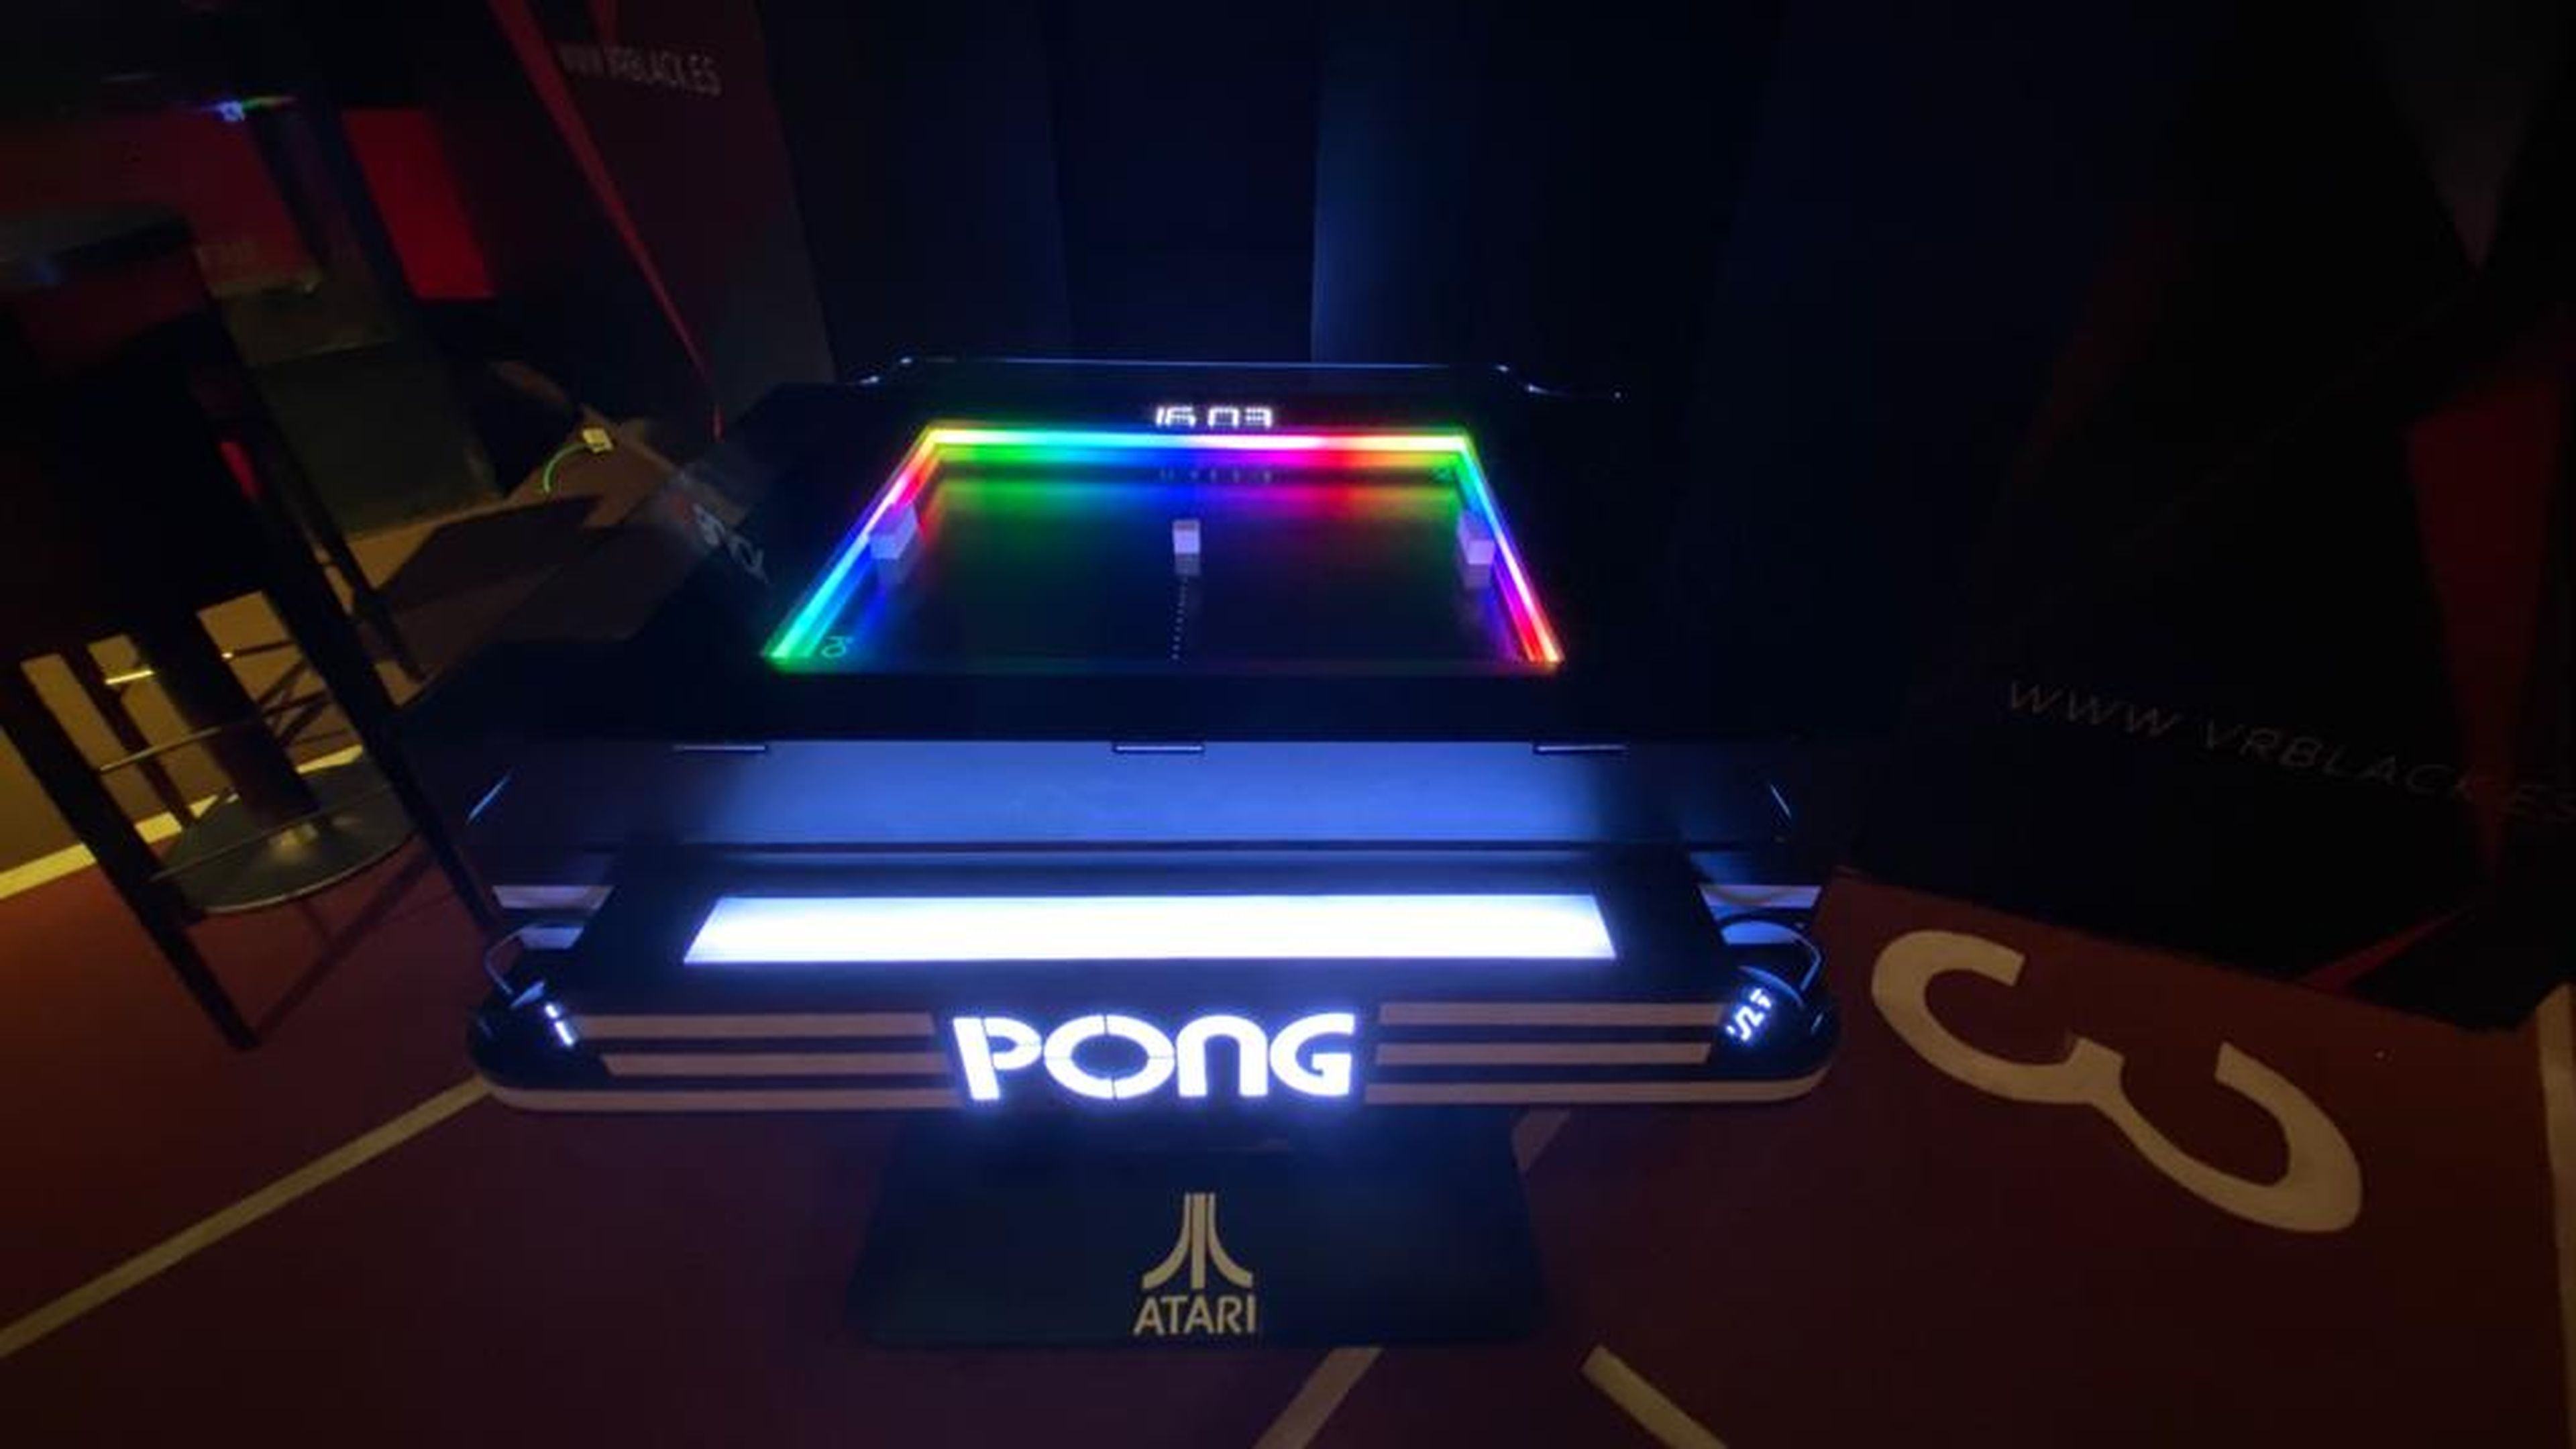 Por último, algo que llamo poderosamente mi atención y encantará a los nostálgicos: cuenta con una máquina de Pong totalmente operativa